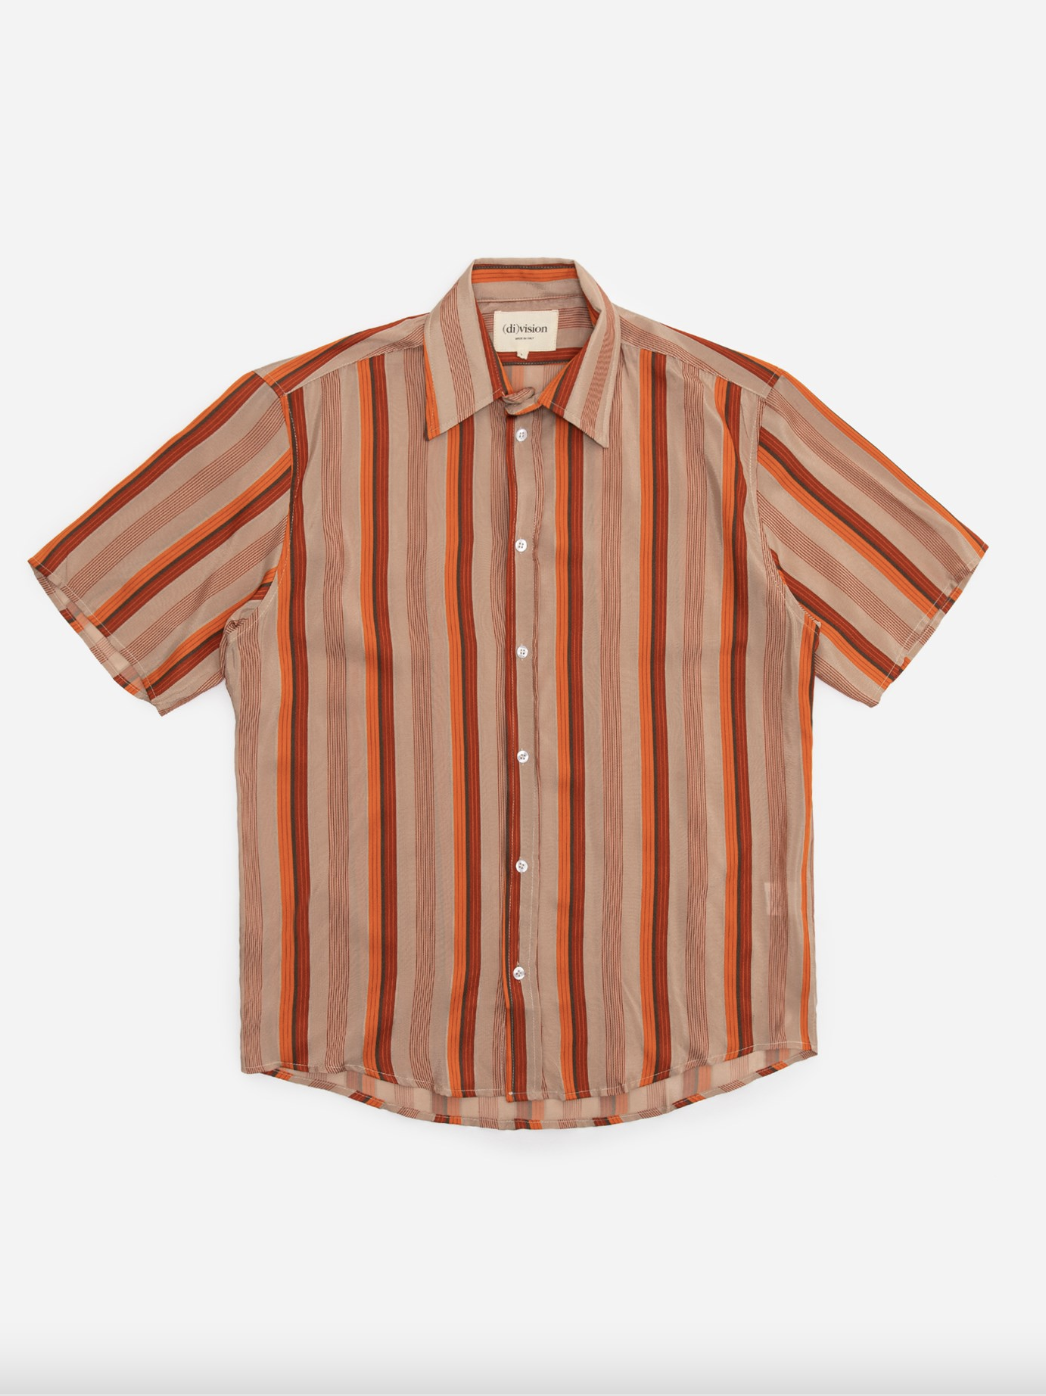 outfit picks week 33 (di)vision Short Sleeve Shirt